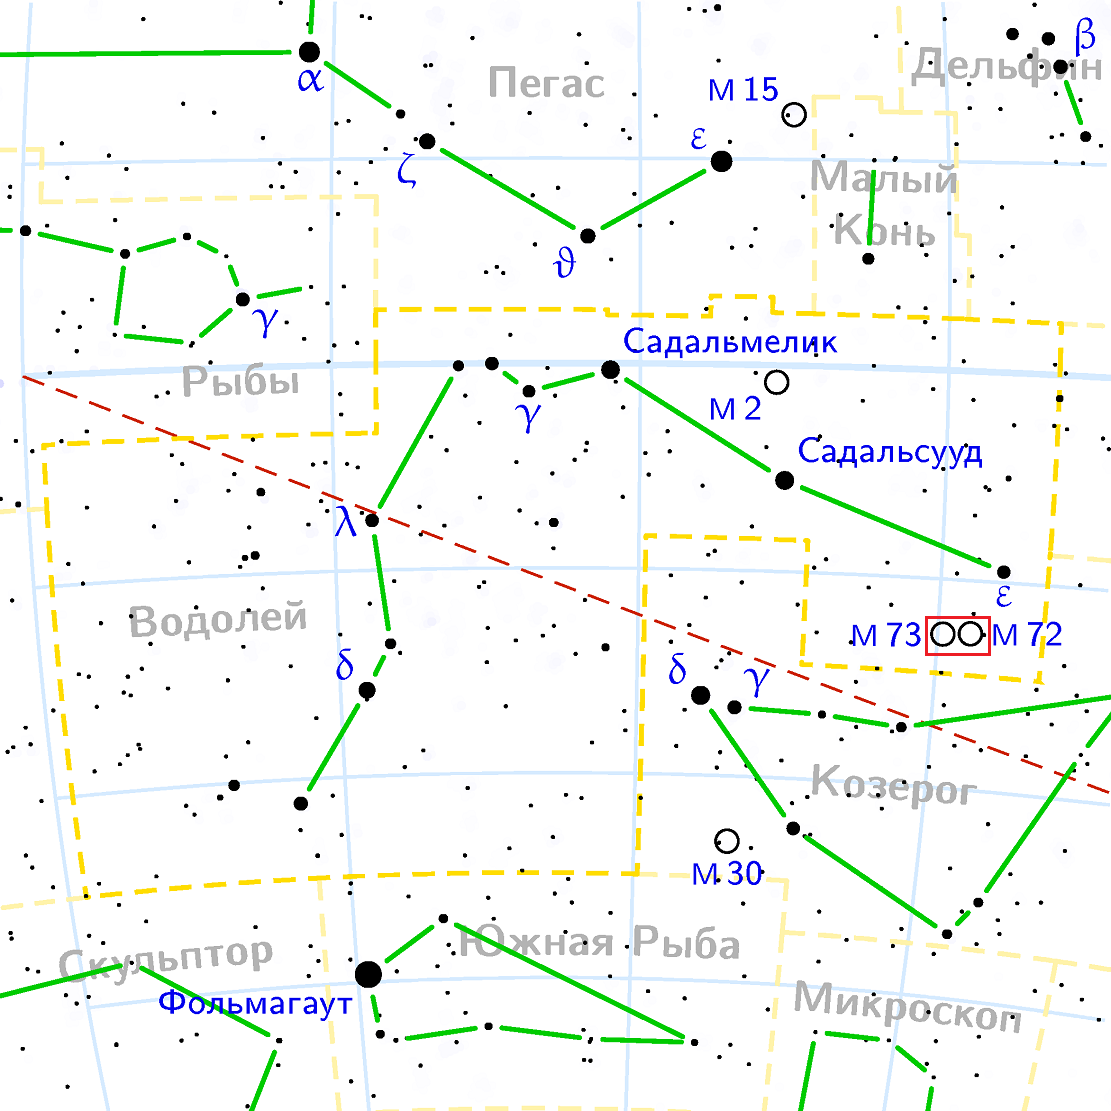 Шаровое скопление M72 и рассеянное скопление M73 в созвездии Водолея